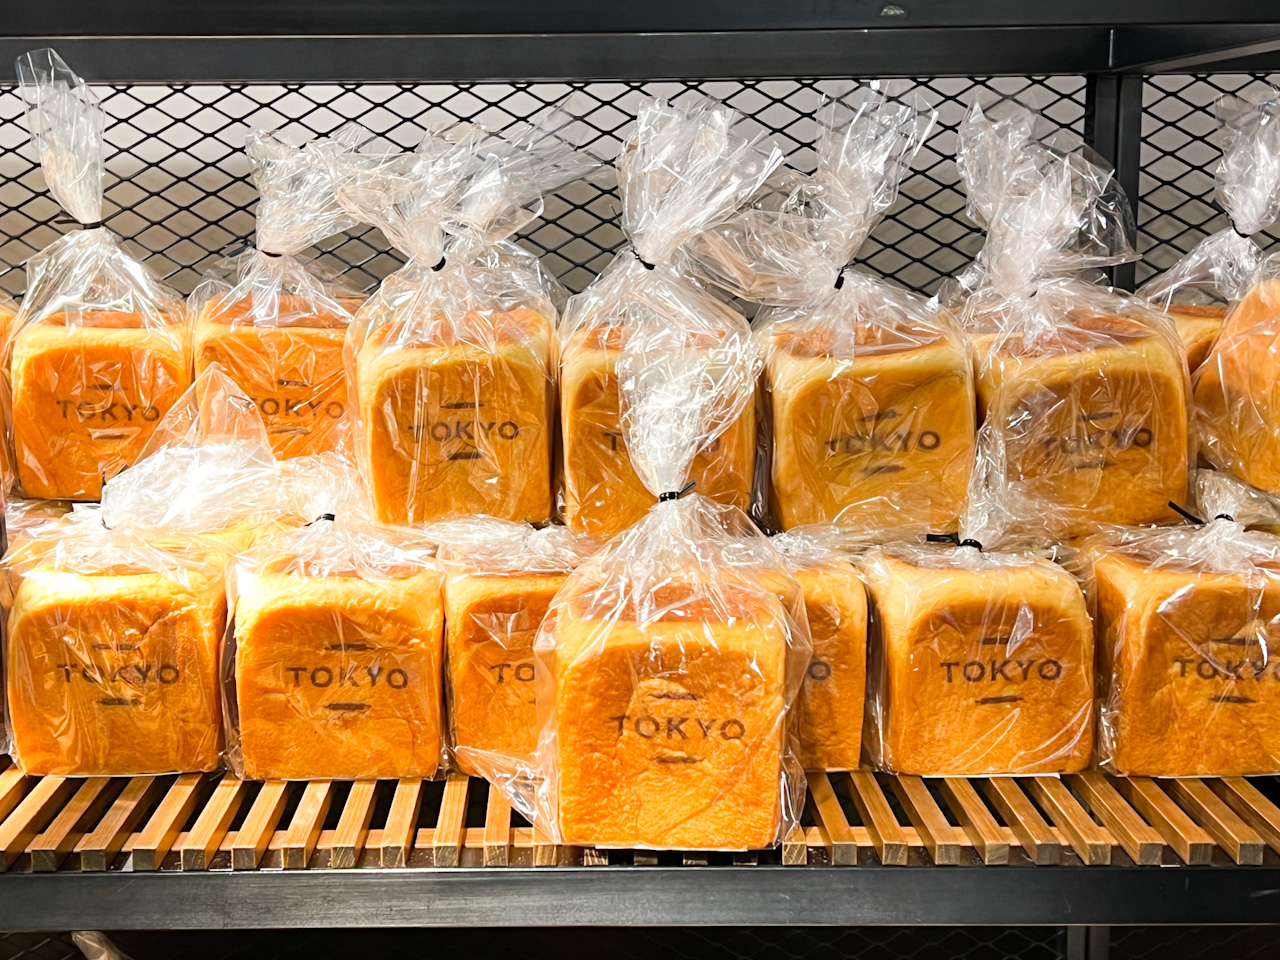 栃木県産とちおとめを使用したオリジナルジャムを練り込んだ食パン「とちおとめプレミアムブレッド」も人気